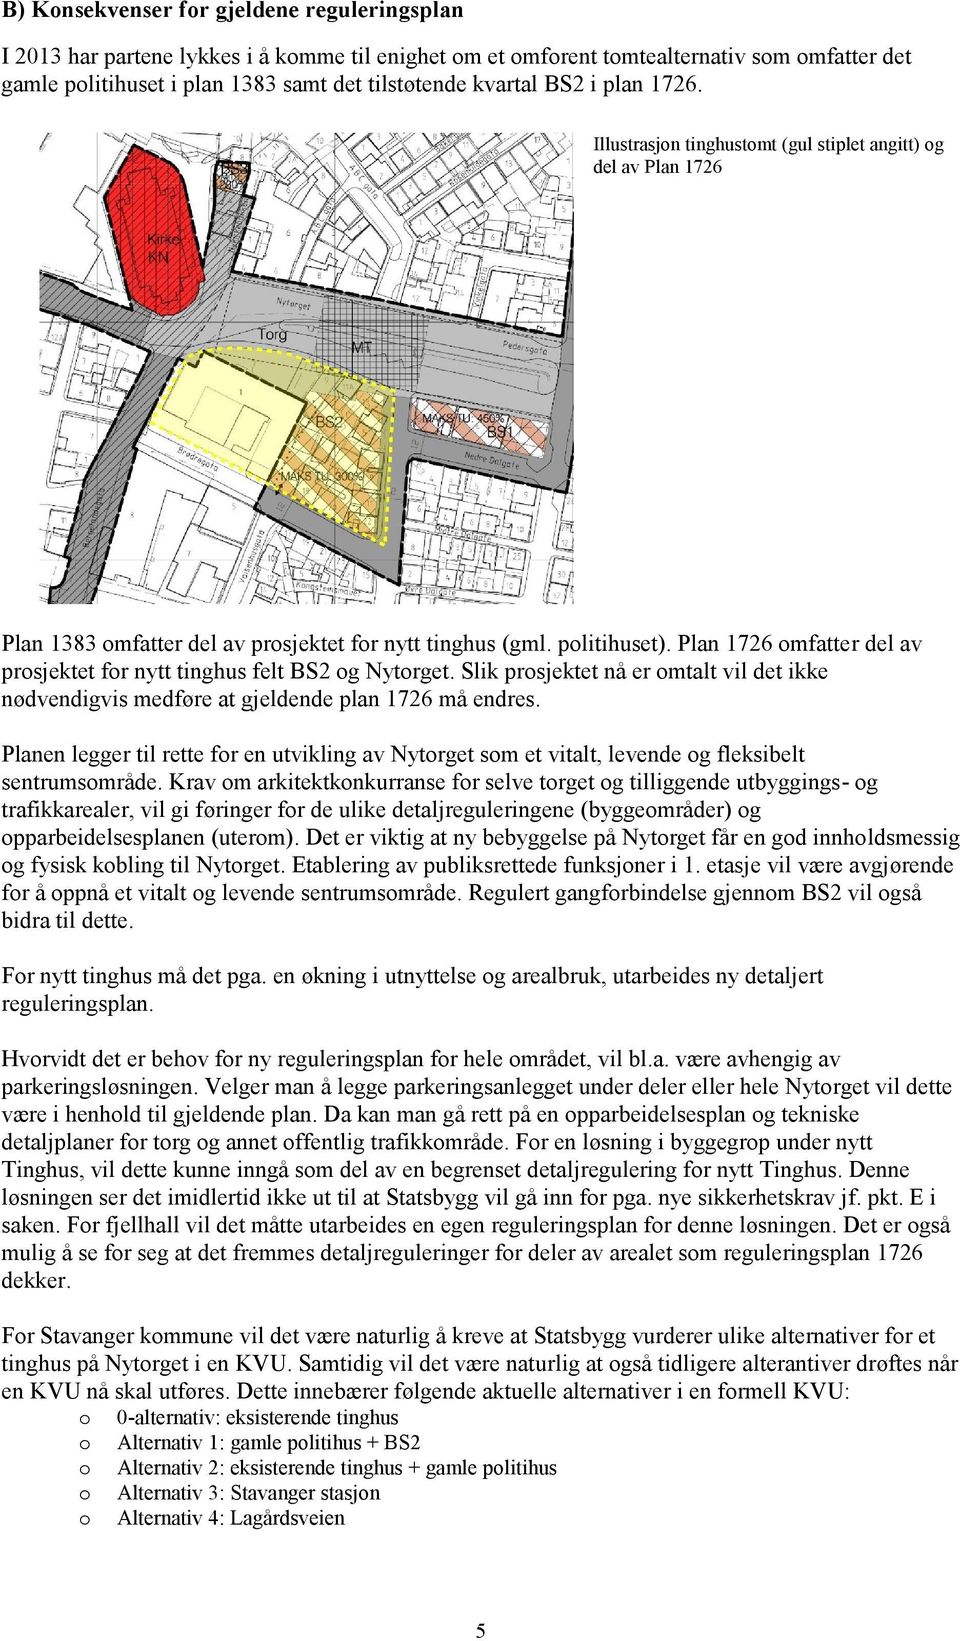 Plan 1726 omfatter del av prosjektet for nytt tinghus felt BS2 og Nytorget. Slik prosjektet nå er omtalt vil det ikke nødvendigvis medføre at gjeldende plan 1726 må endres.